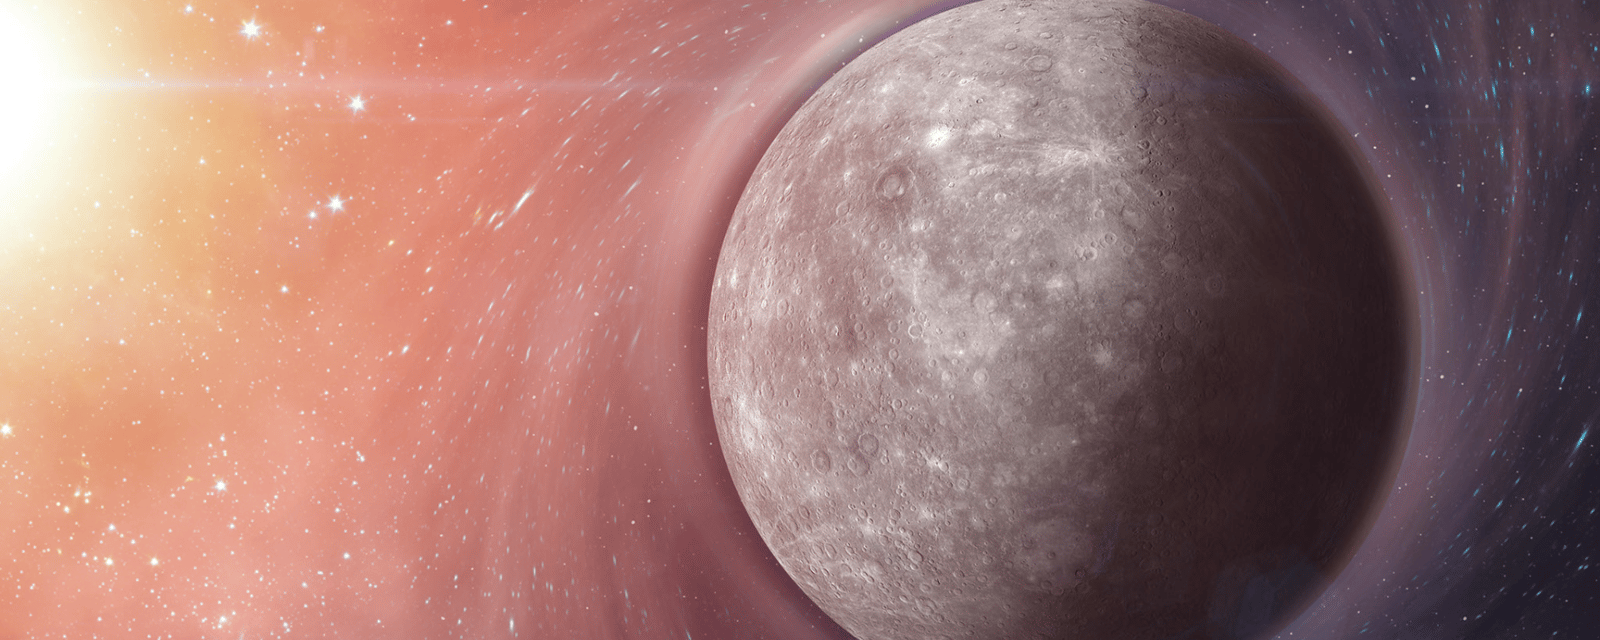 Astrologie : Mercure est de nouveau rétrograde et voici ce que cela signifie dans votre quotidien